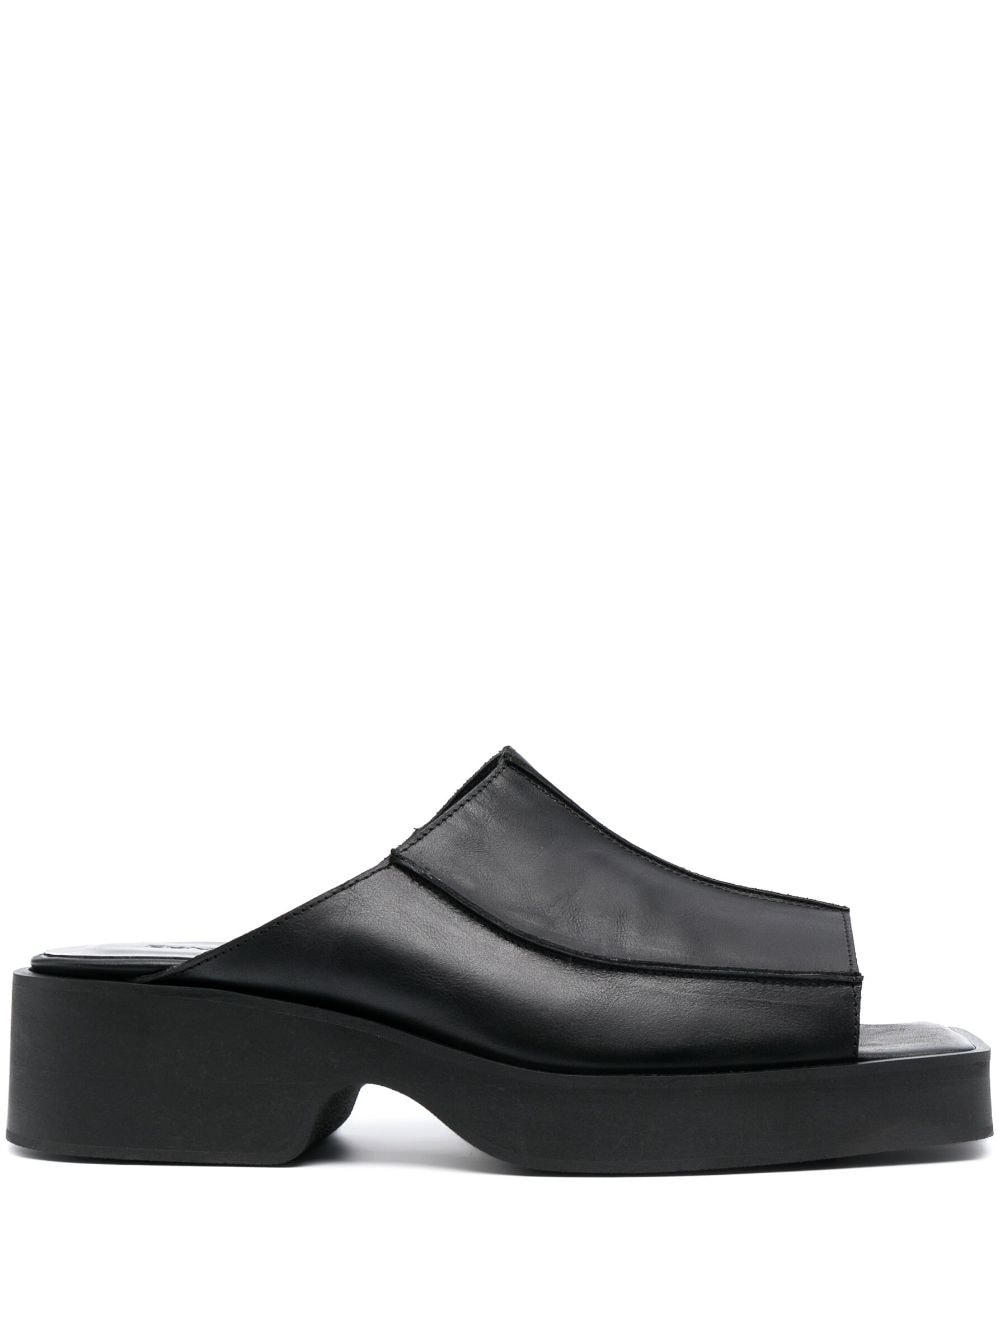 Eckhaus Latta block heel leather sandals - Black von Eckhaus Latta